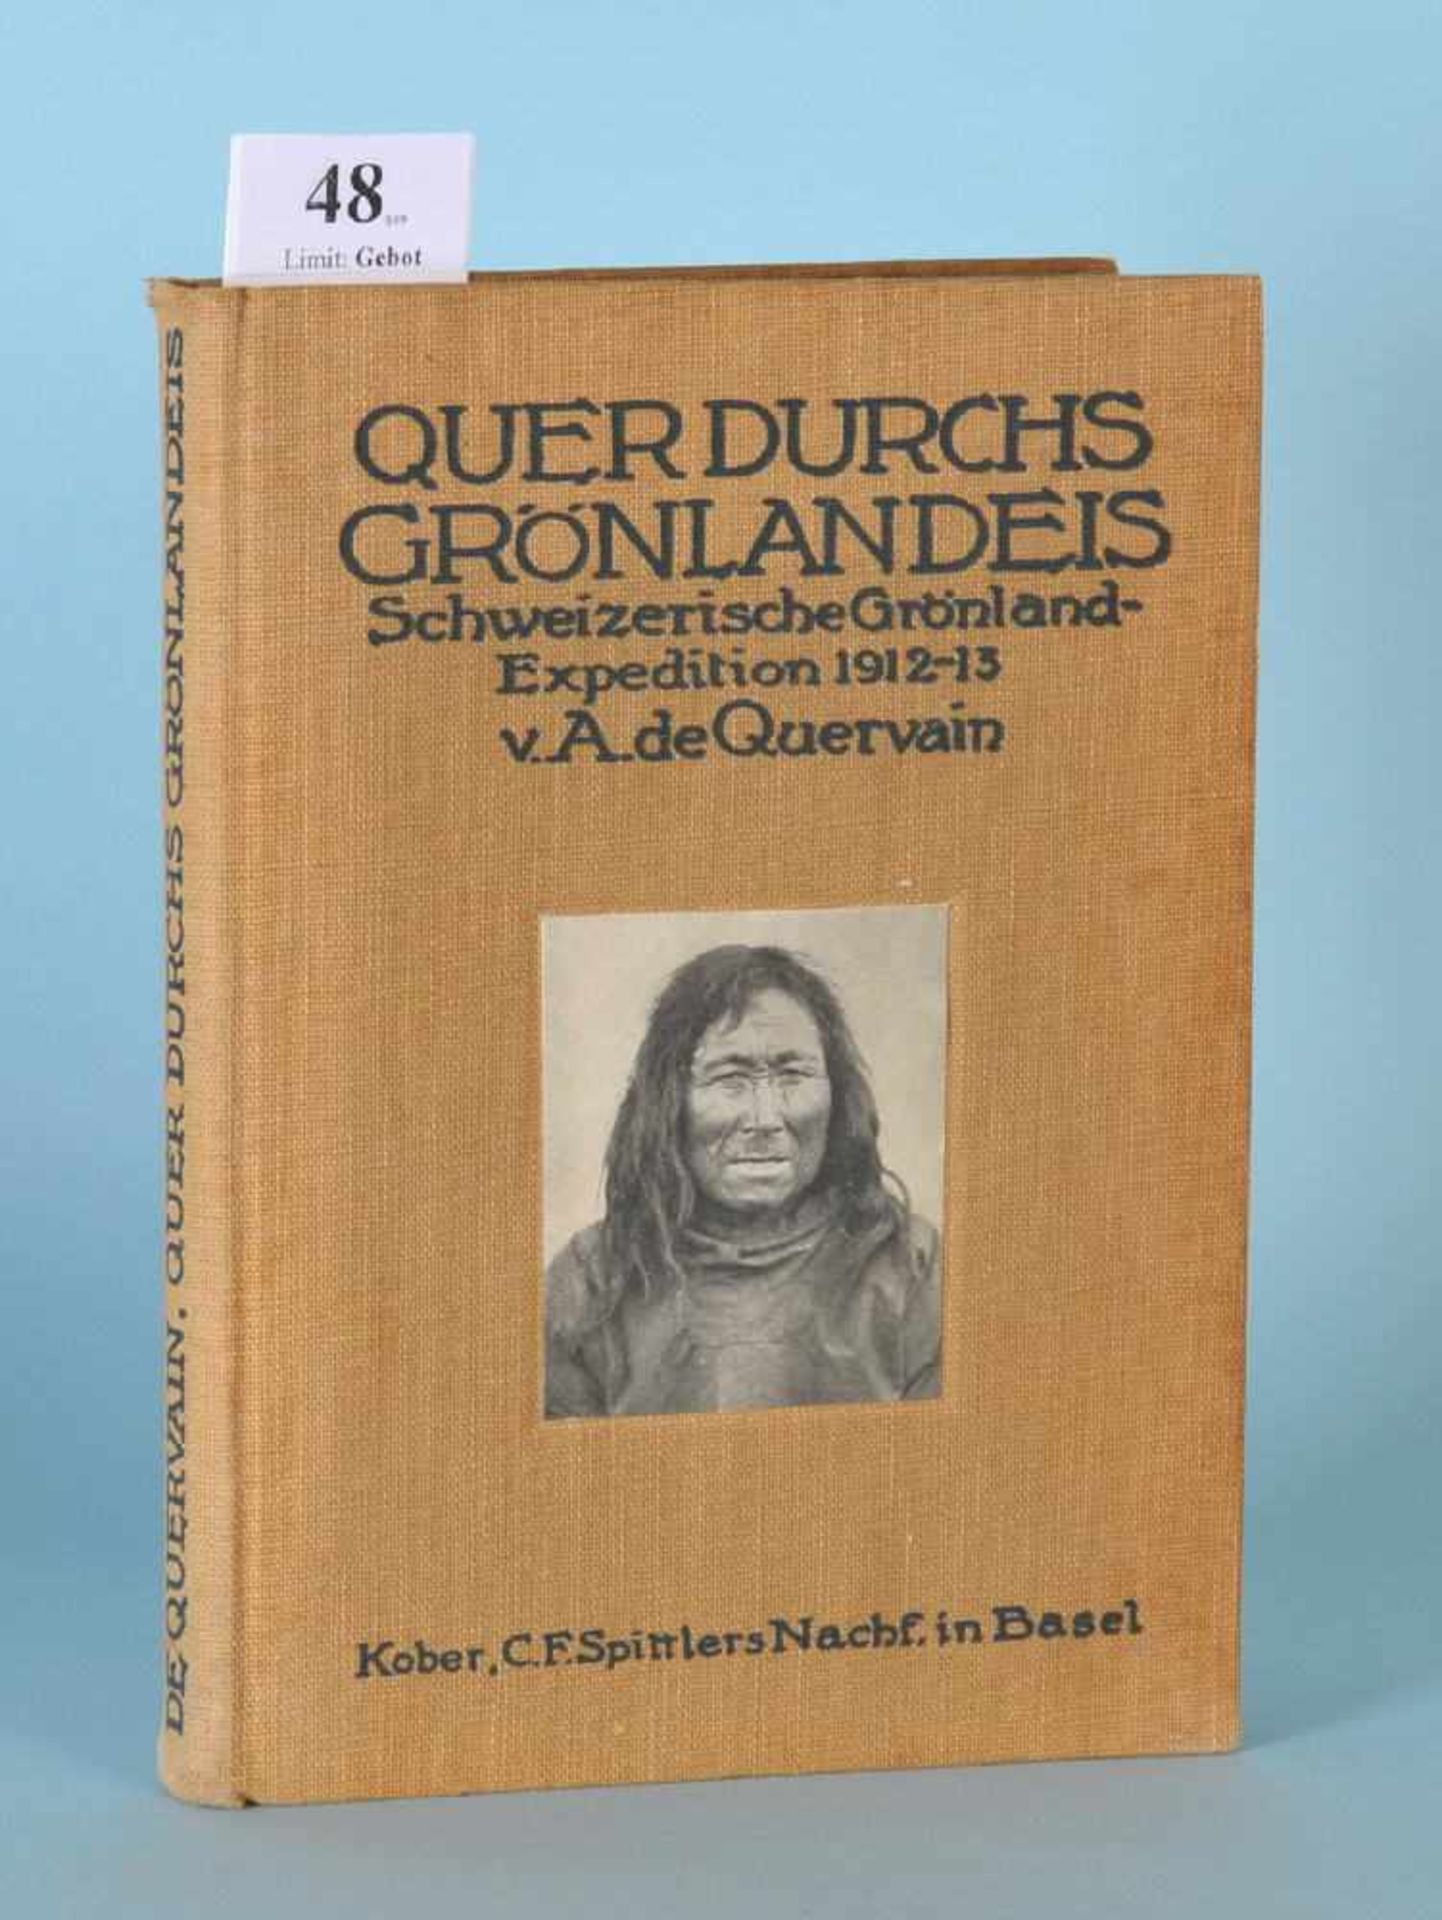 Quervain, Alfred de "Quer durchs Grönlandeis""Die schweizerische Grönland-Expedition 1912/13", 15